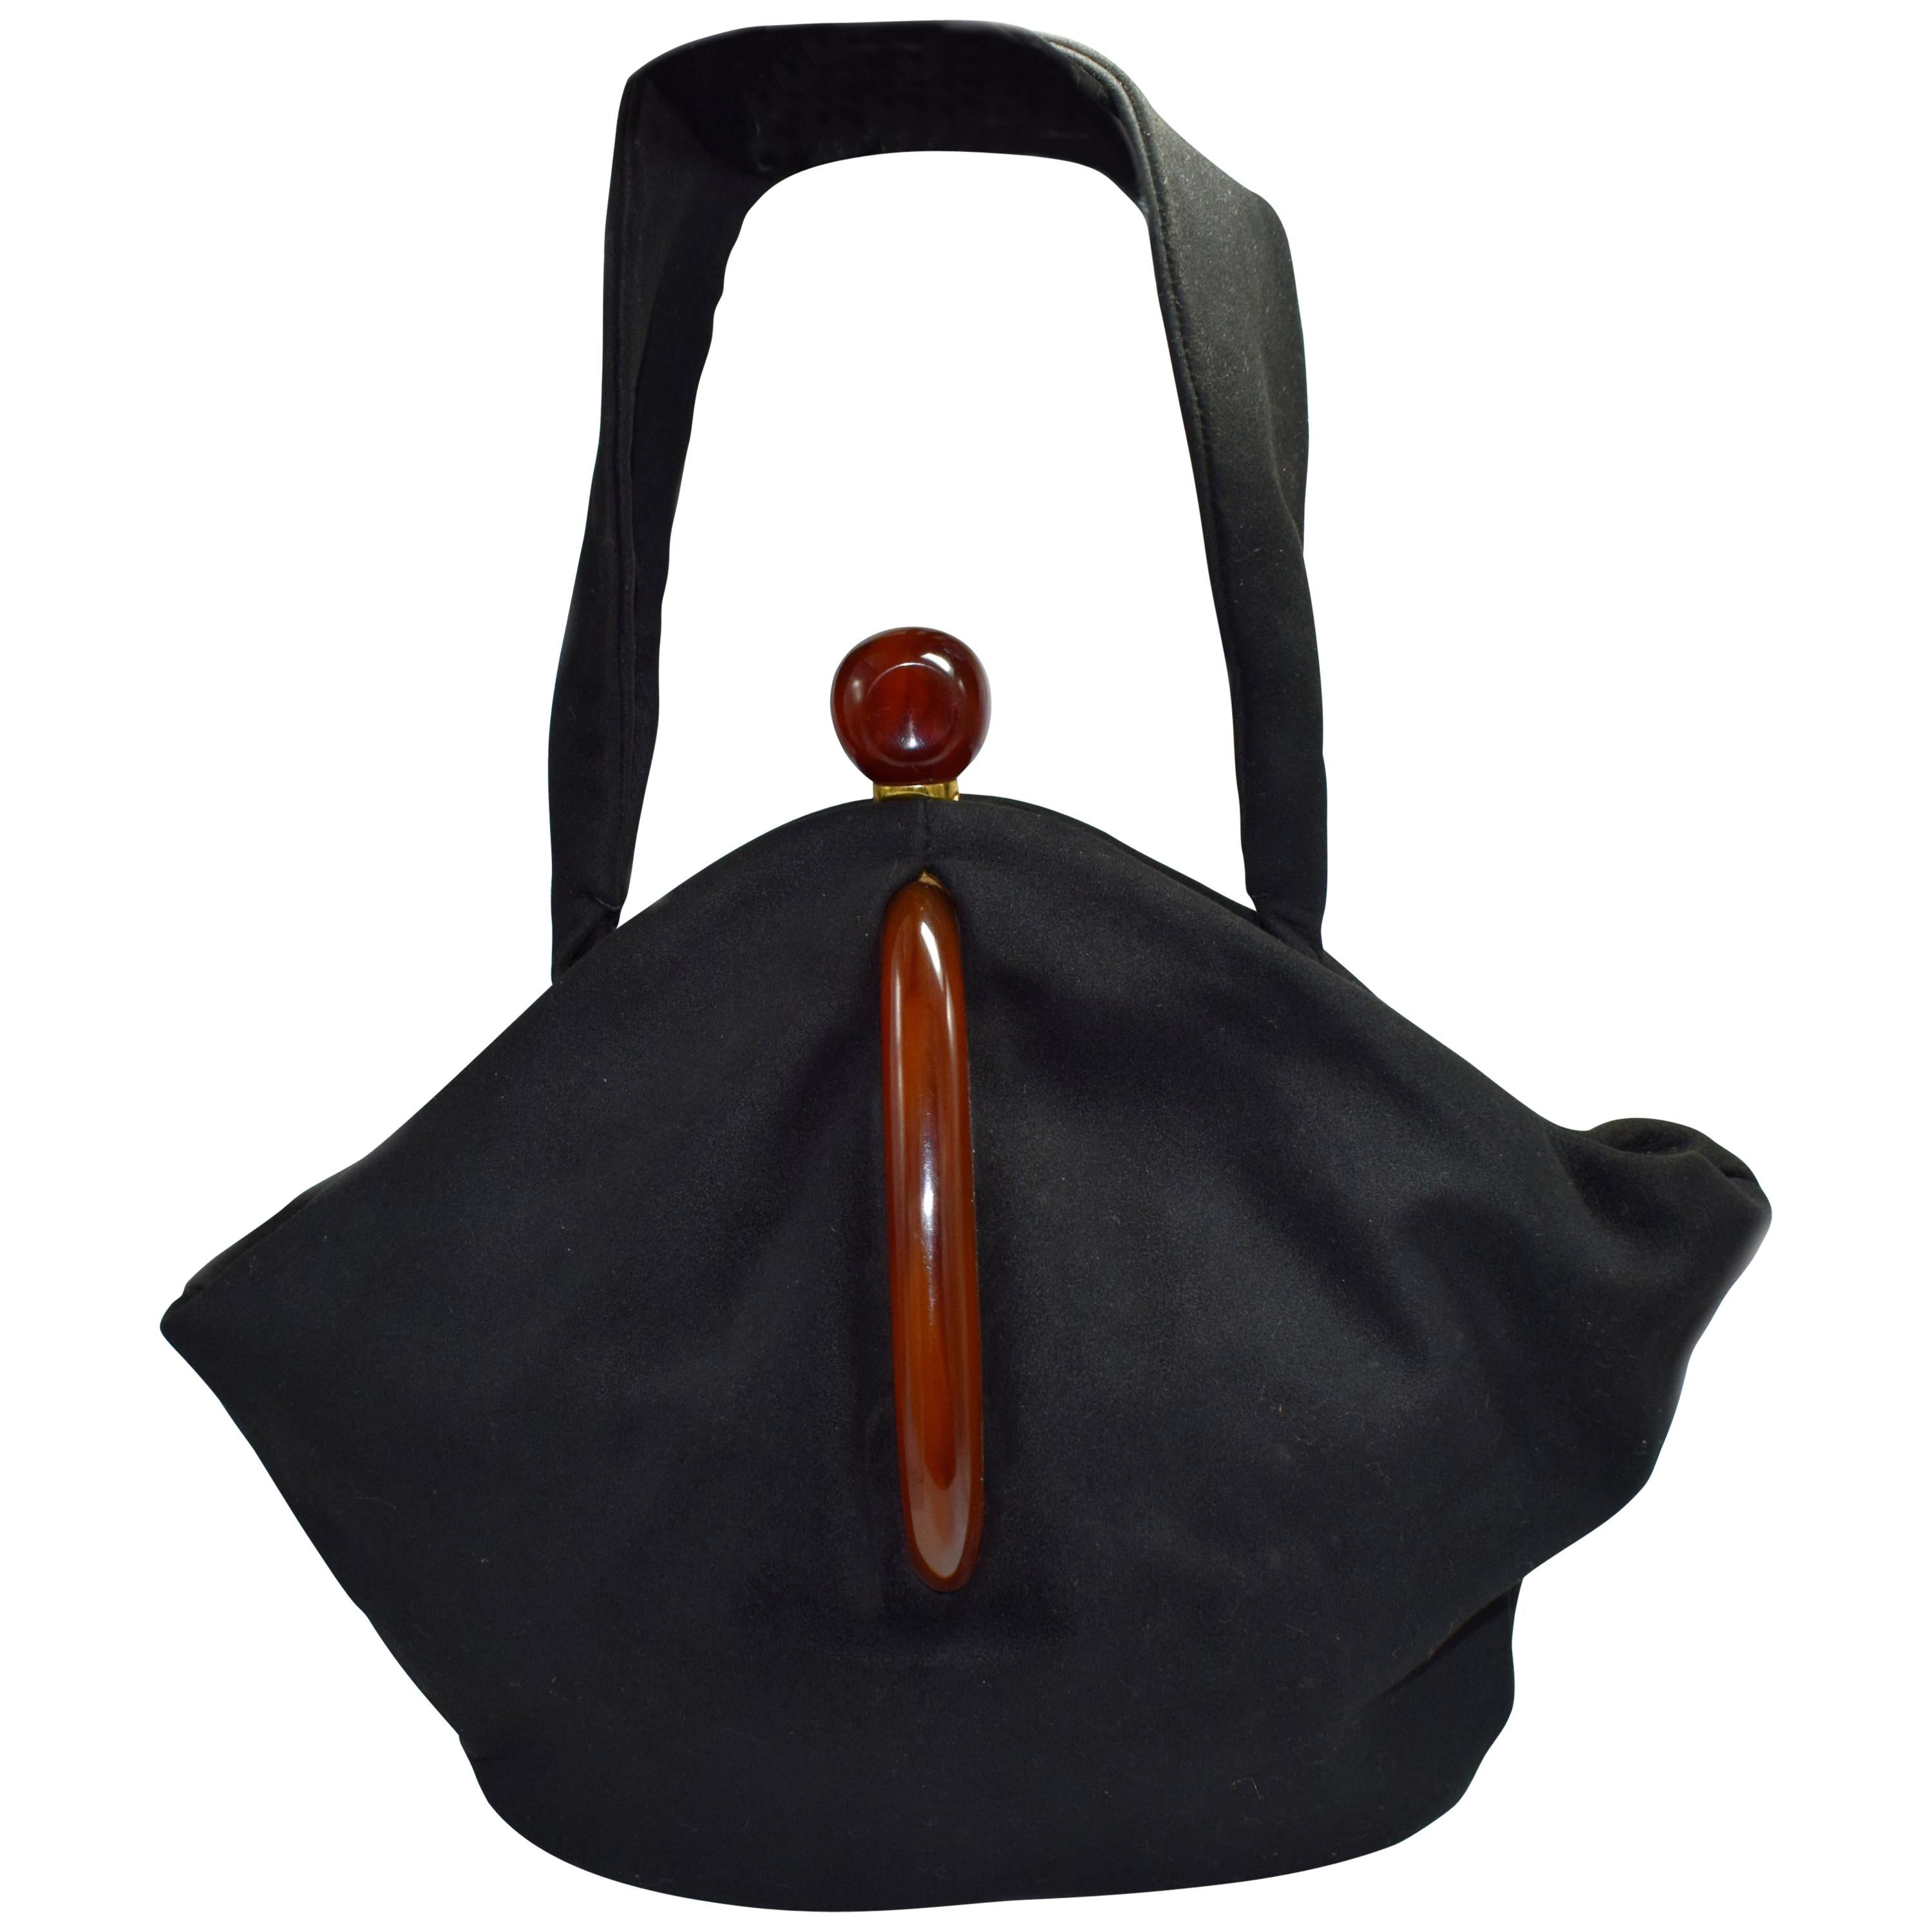 Art Deco Black Suede Phenolic Bakelite Ladies Bag, circa 1930s